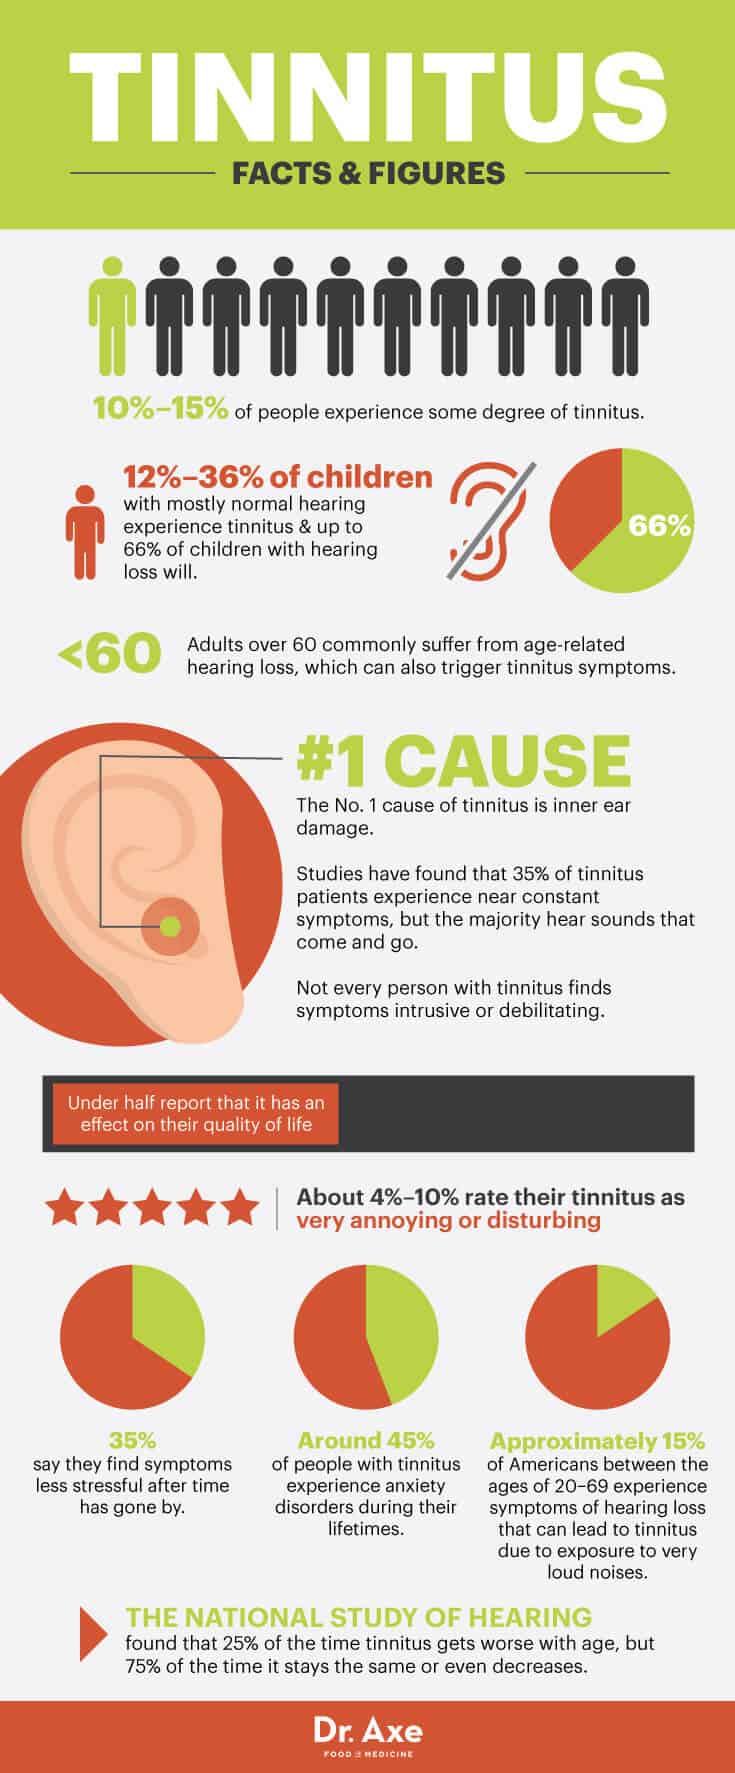 Tinnitus facts - Dr. Axe